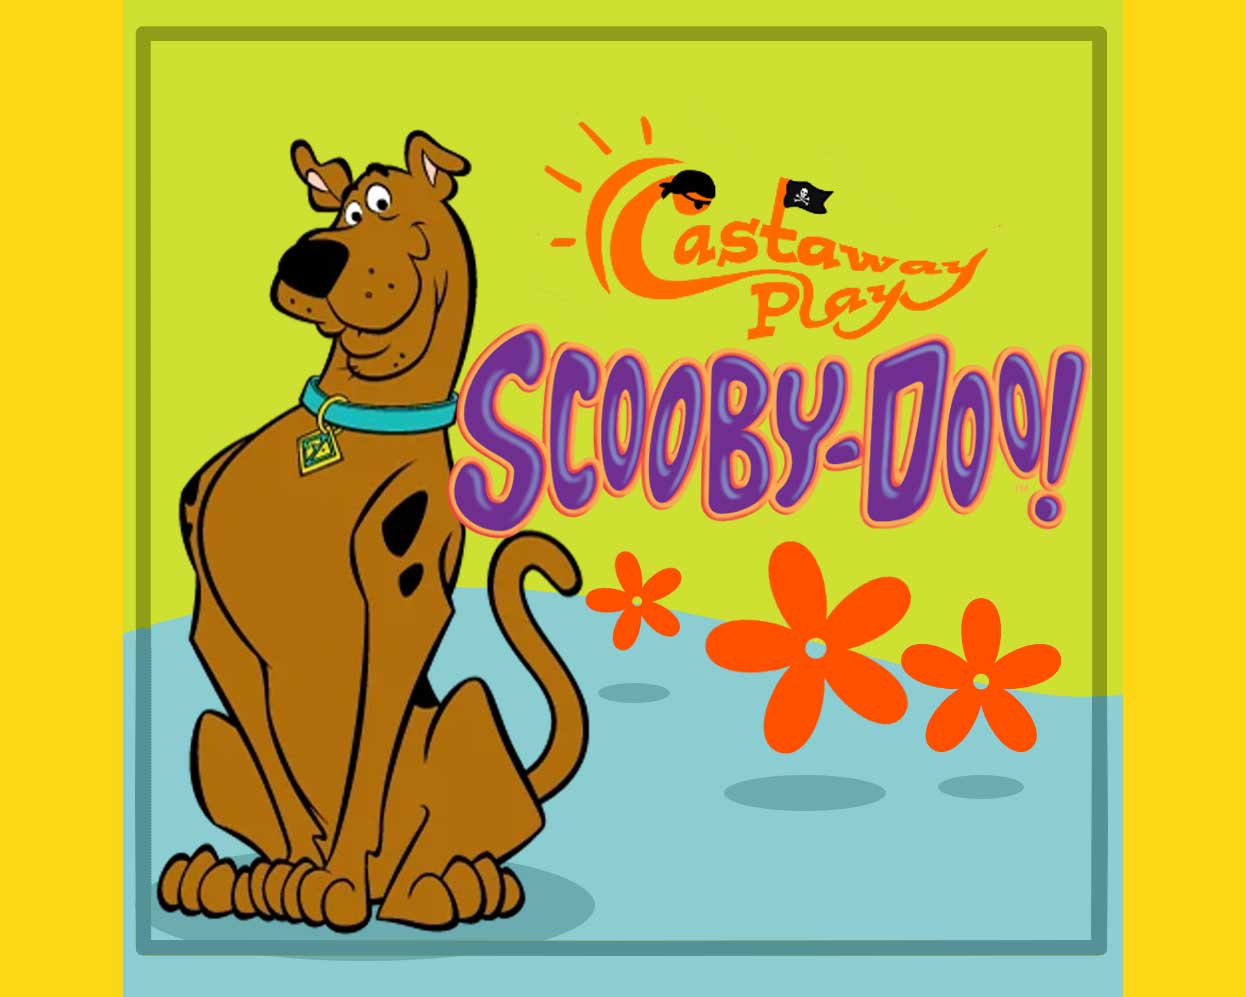 Scooby-Doo & Shaggy